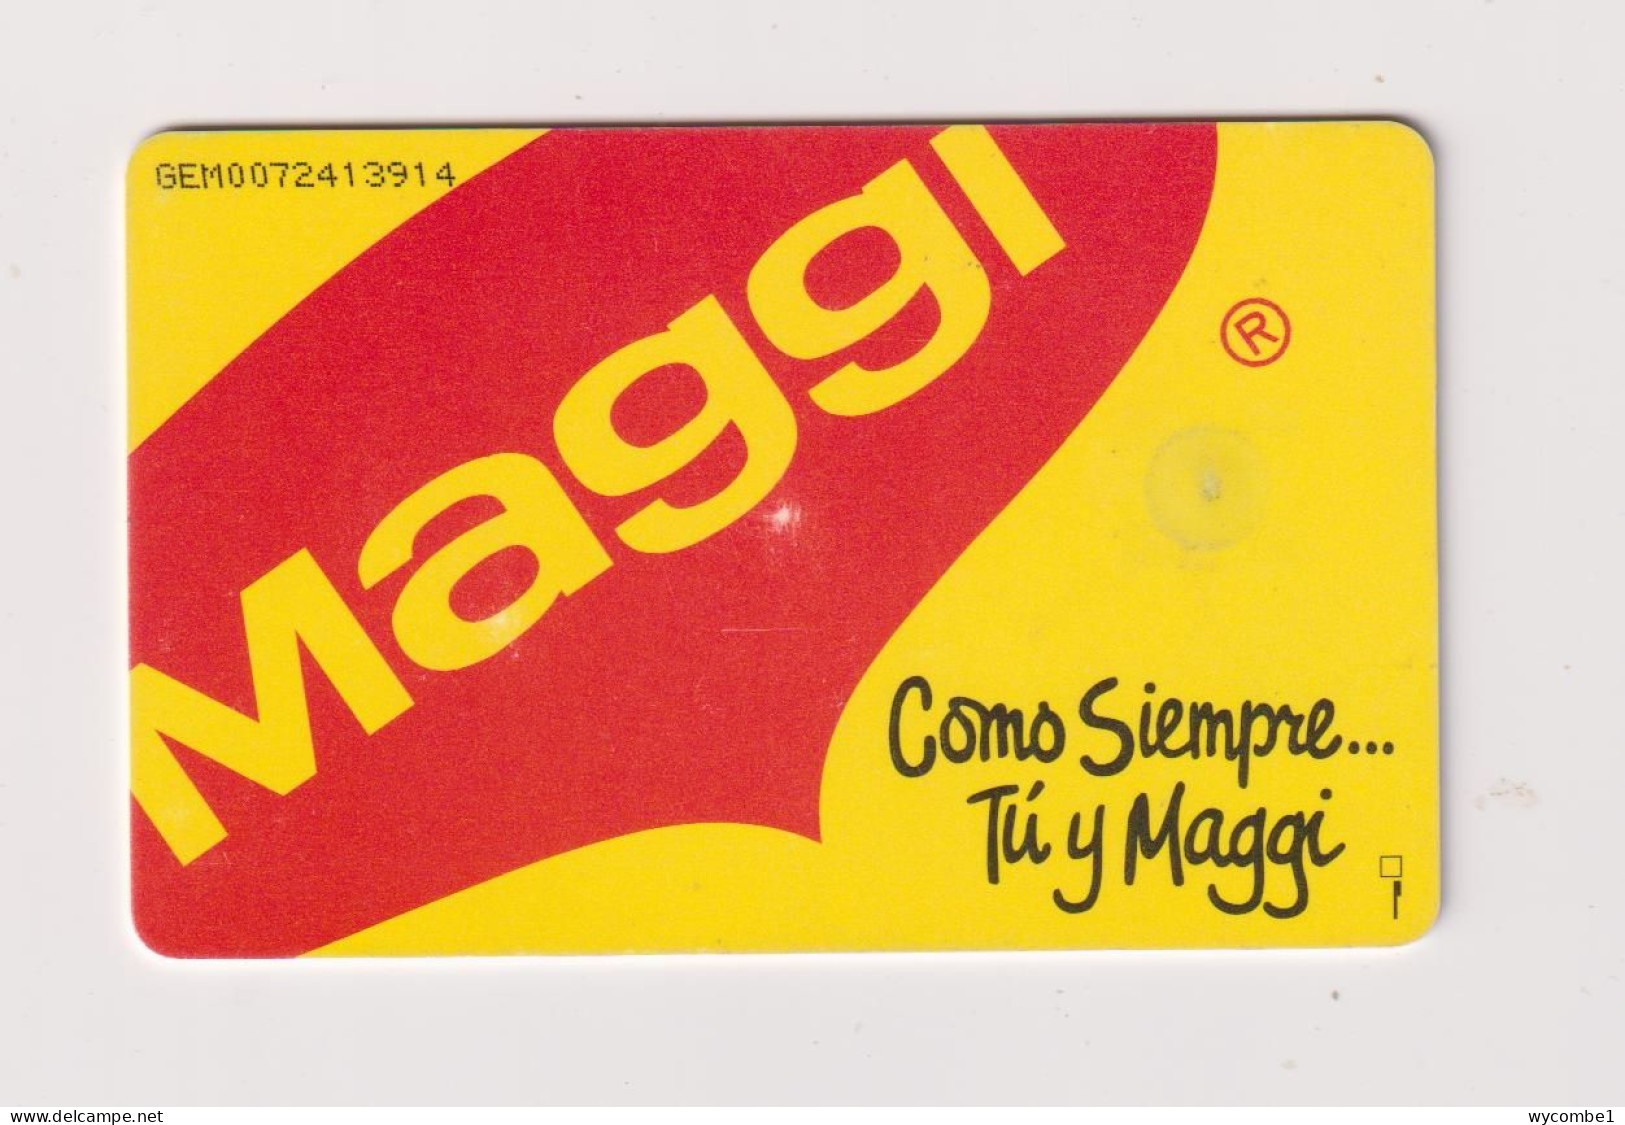 VENEZUELA  -  Maggi Chip Phonecard - Venezuela